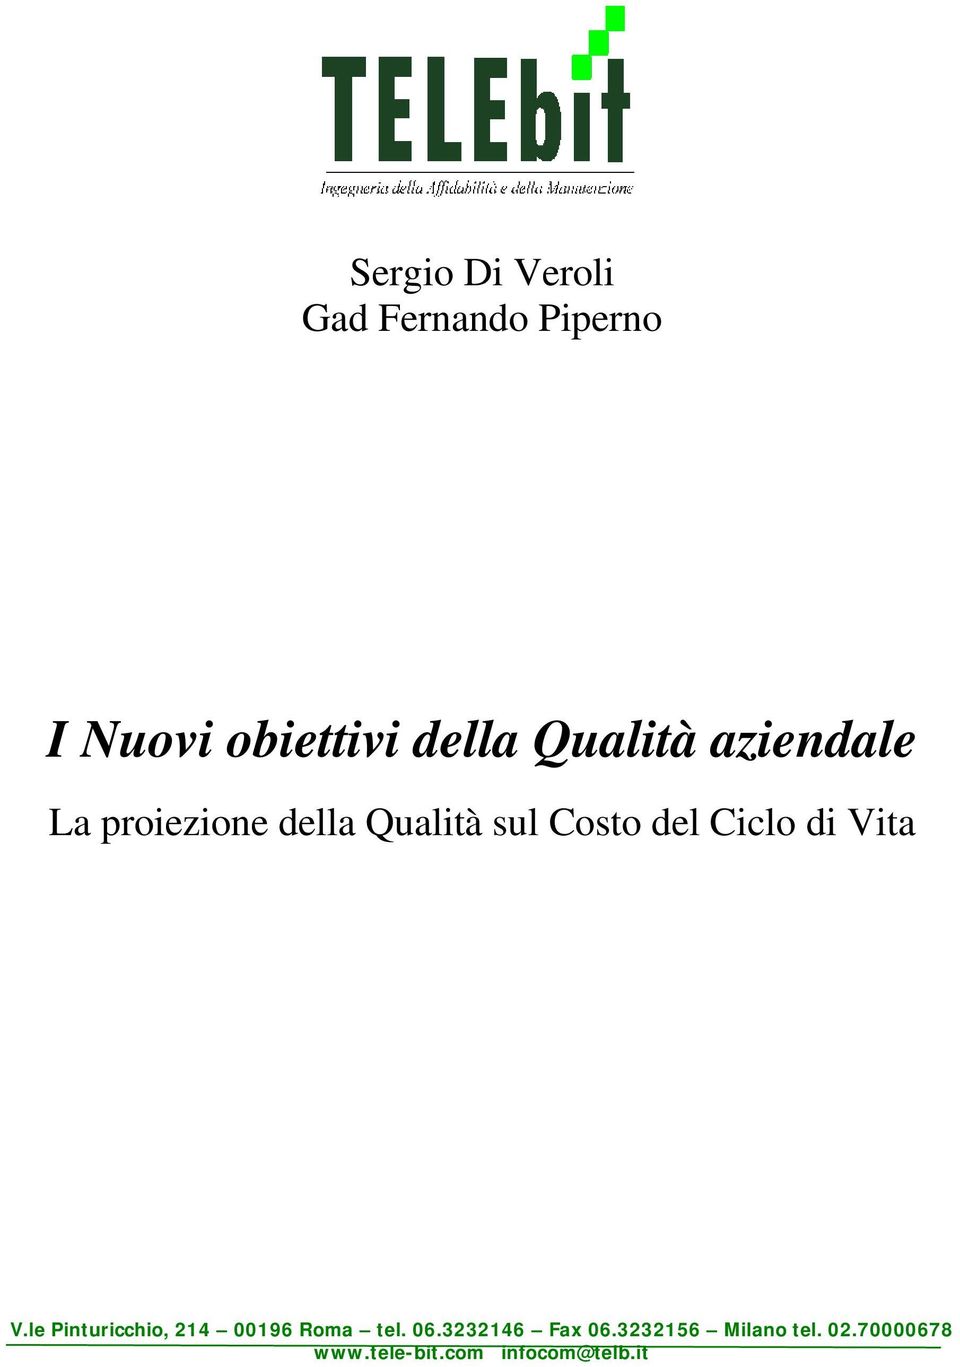 Ciclo di Vita V.le Pinturicchio, 214 00196 Roma tel. 06.